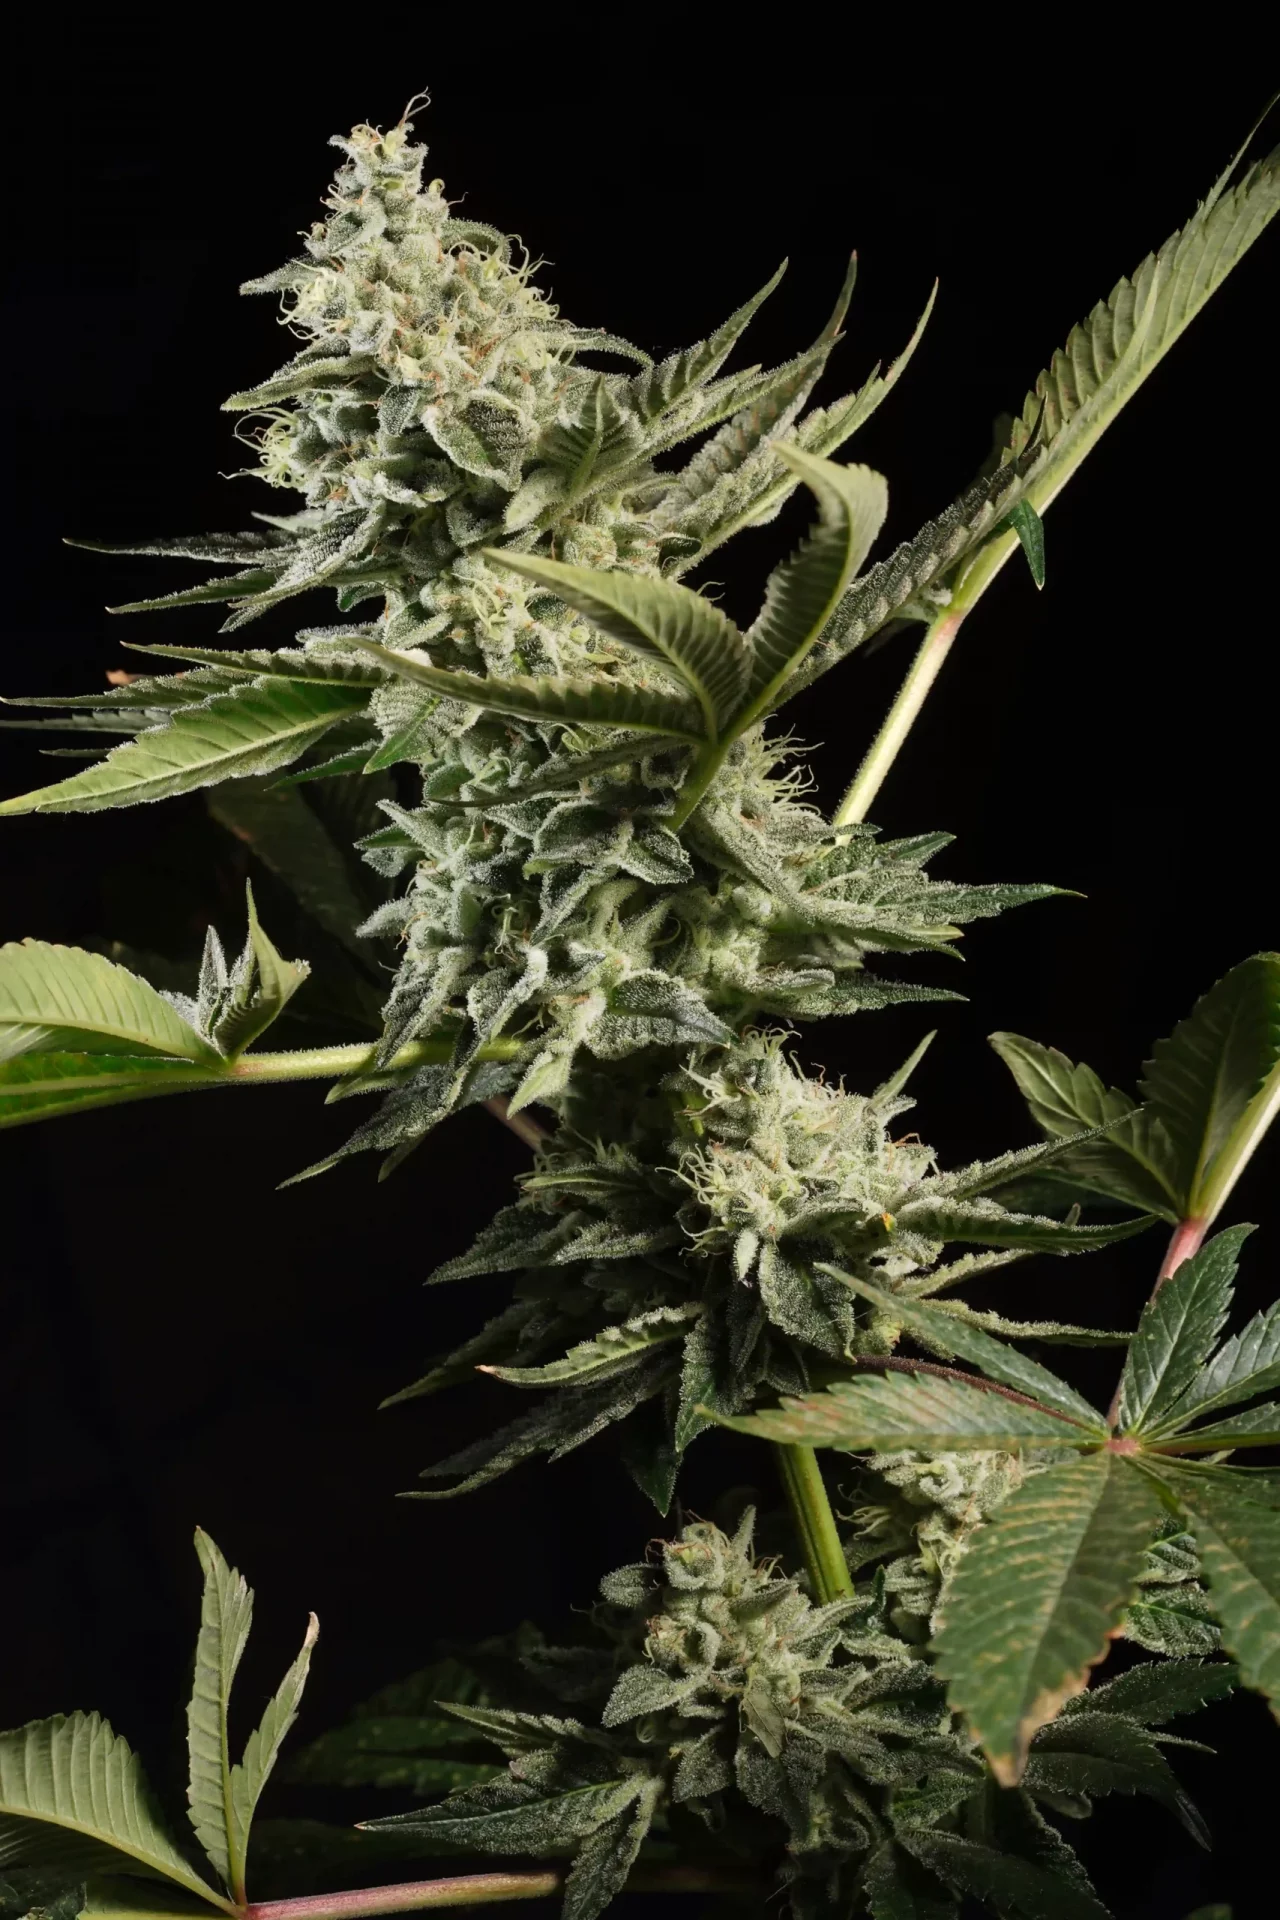 Glowstarz cannabis strain photo with a black background